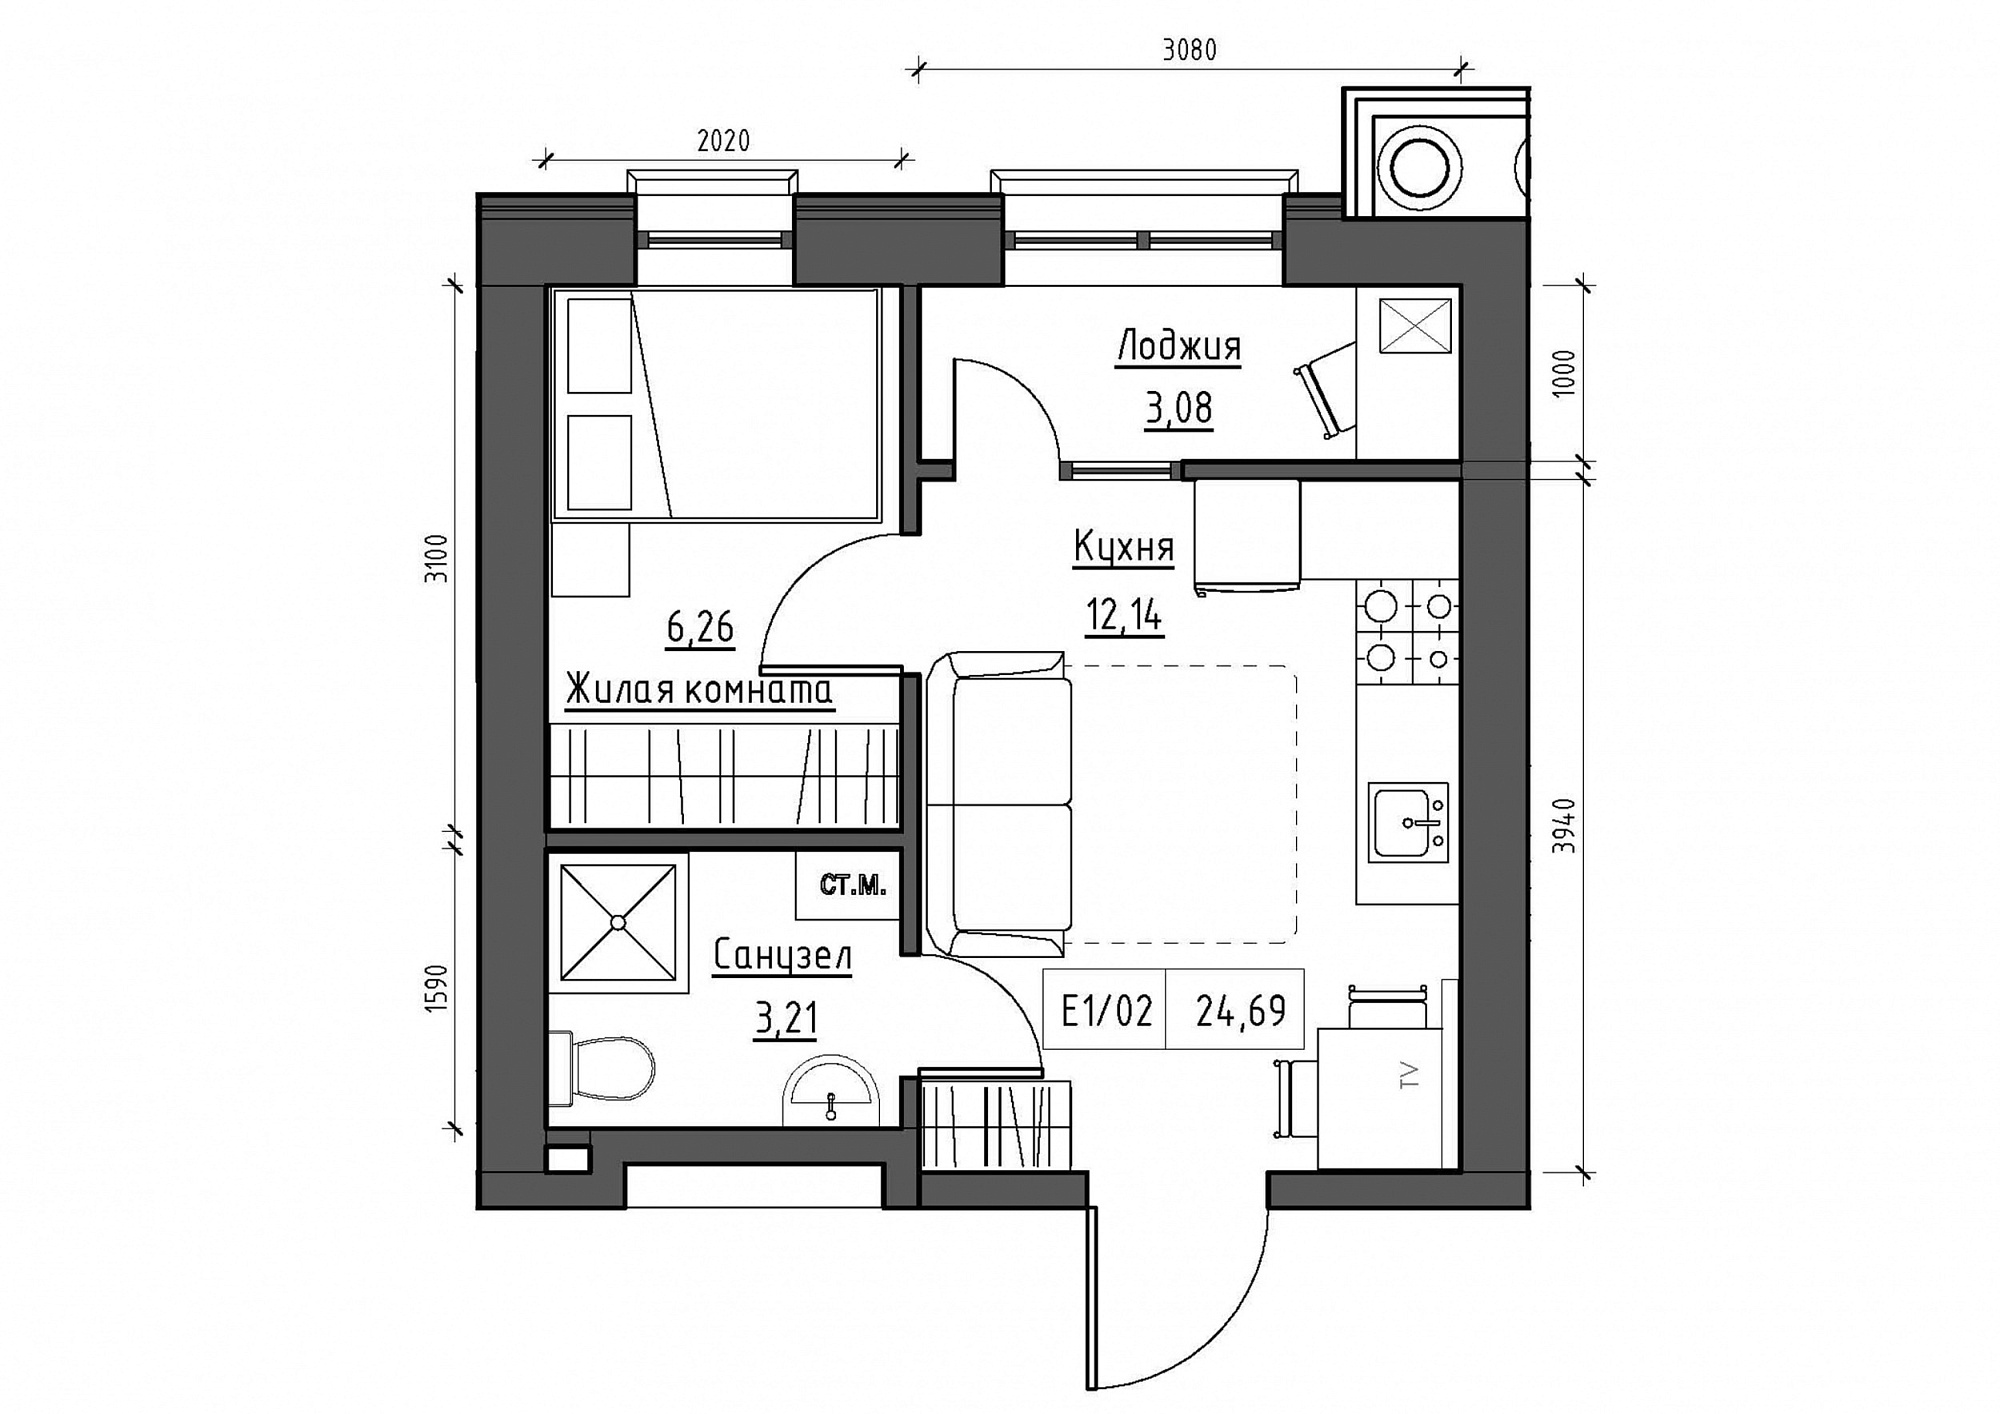 Планировка 1-к квартира площей 24.69м2, KS-011-01/0014.